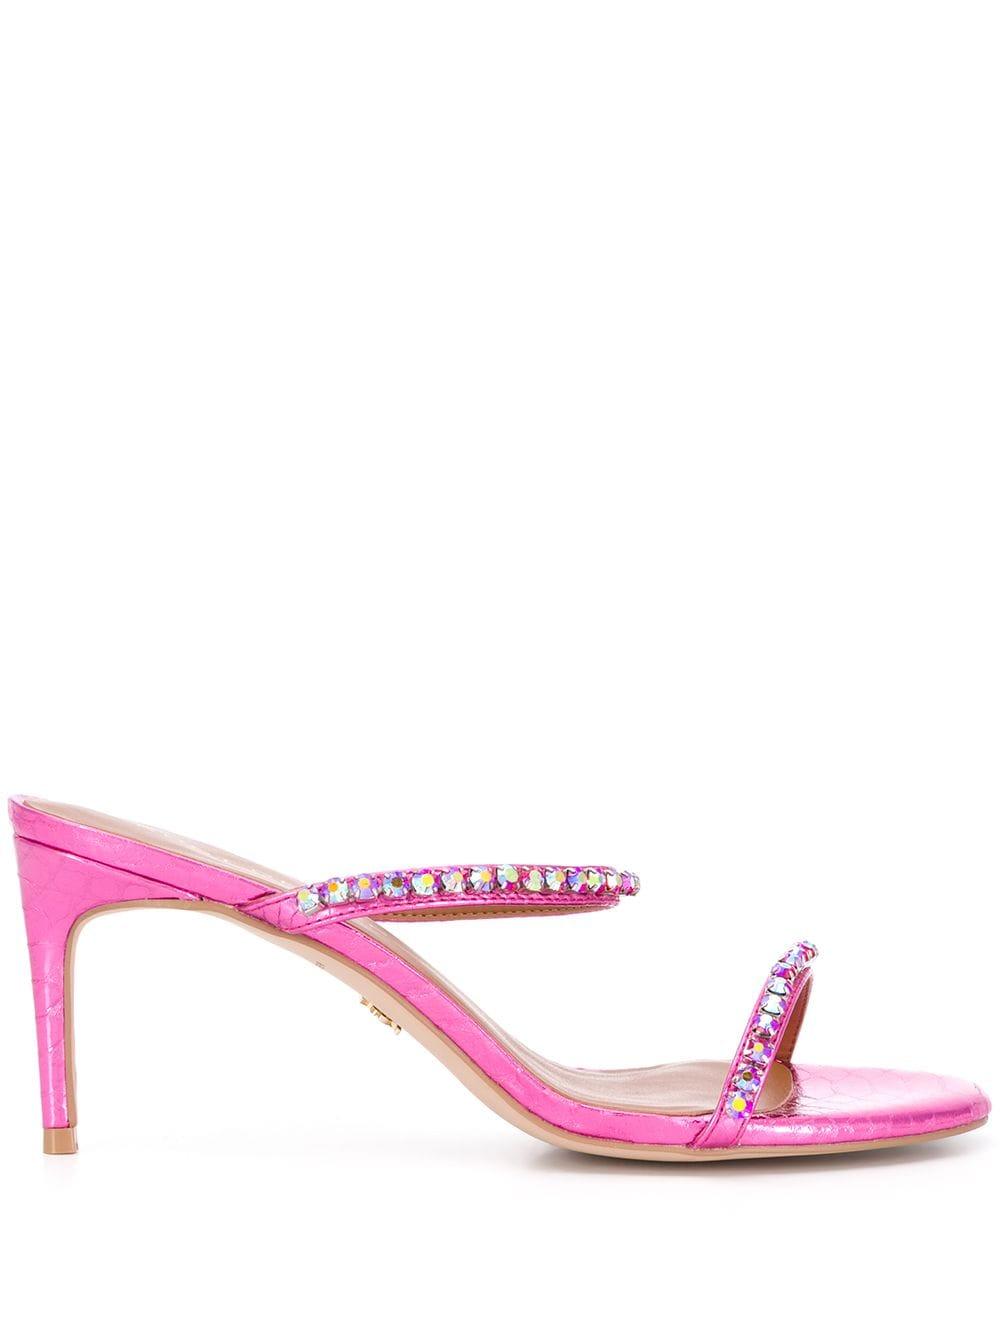 Kurt Geiger Leather 85mm Crystal-embellished Sandals in Pink - Lyst